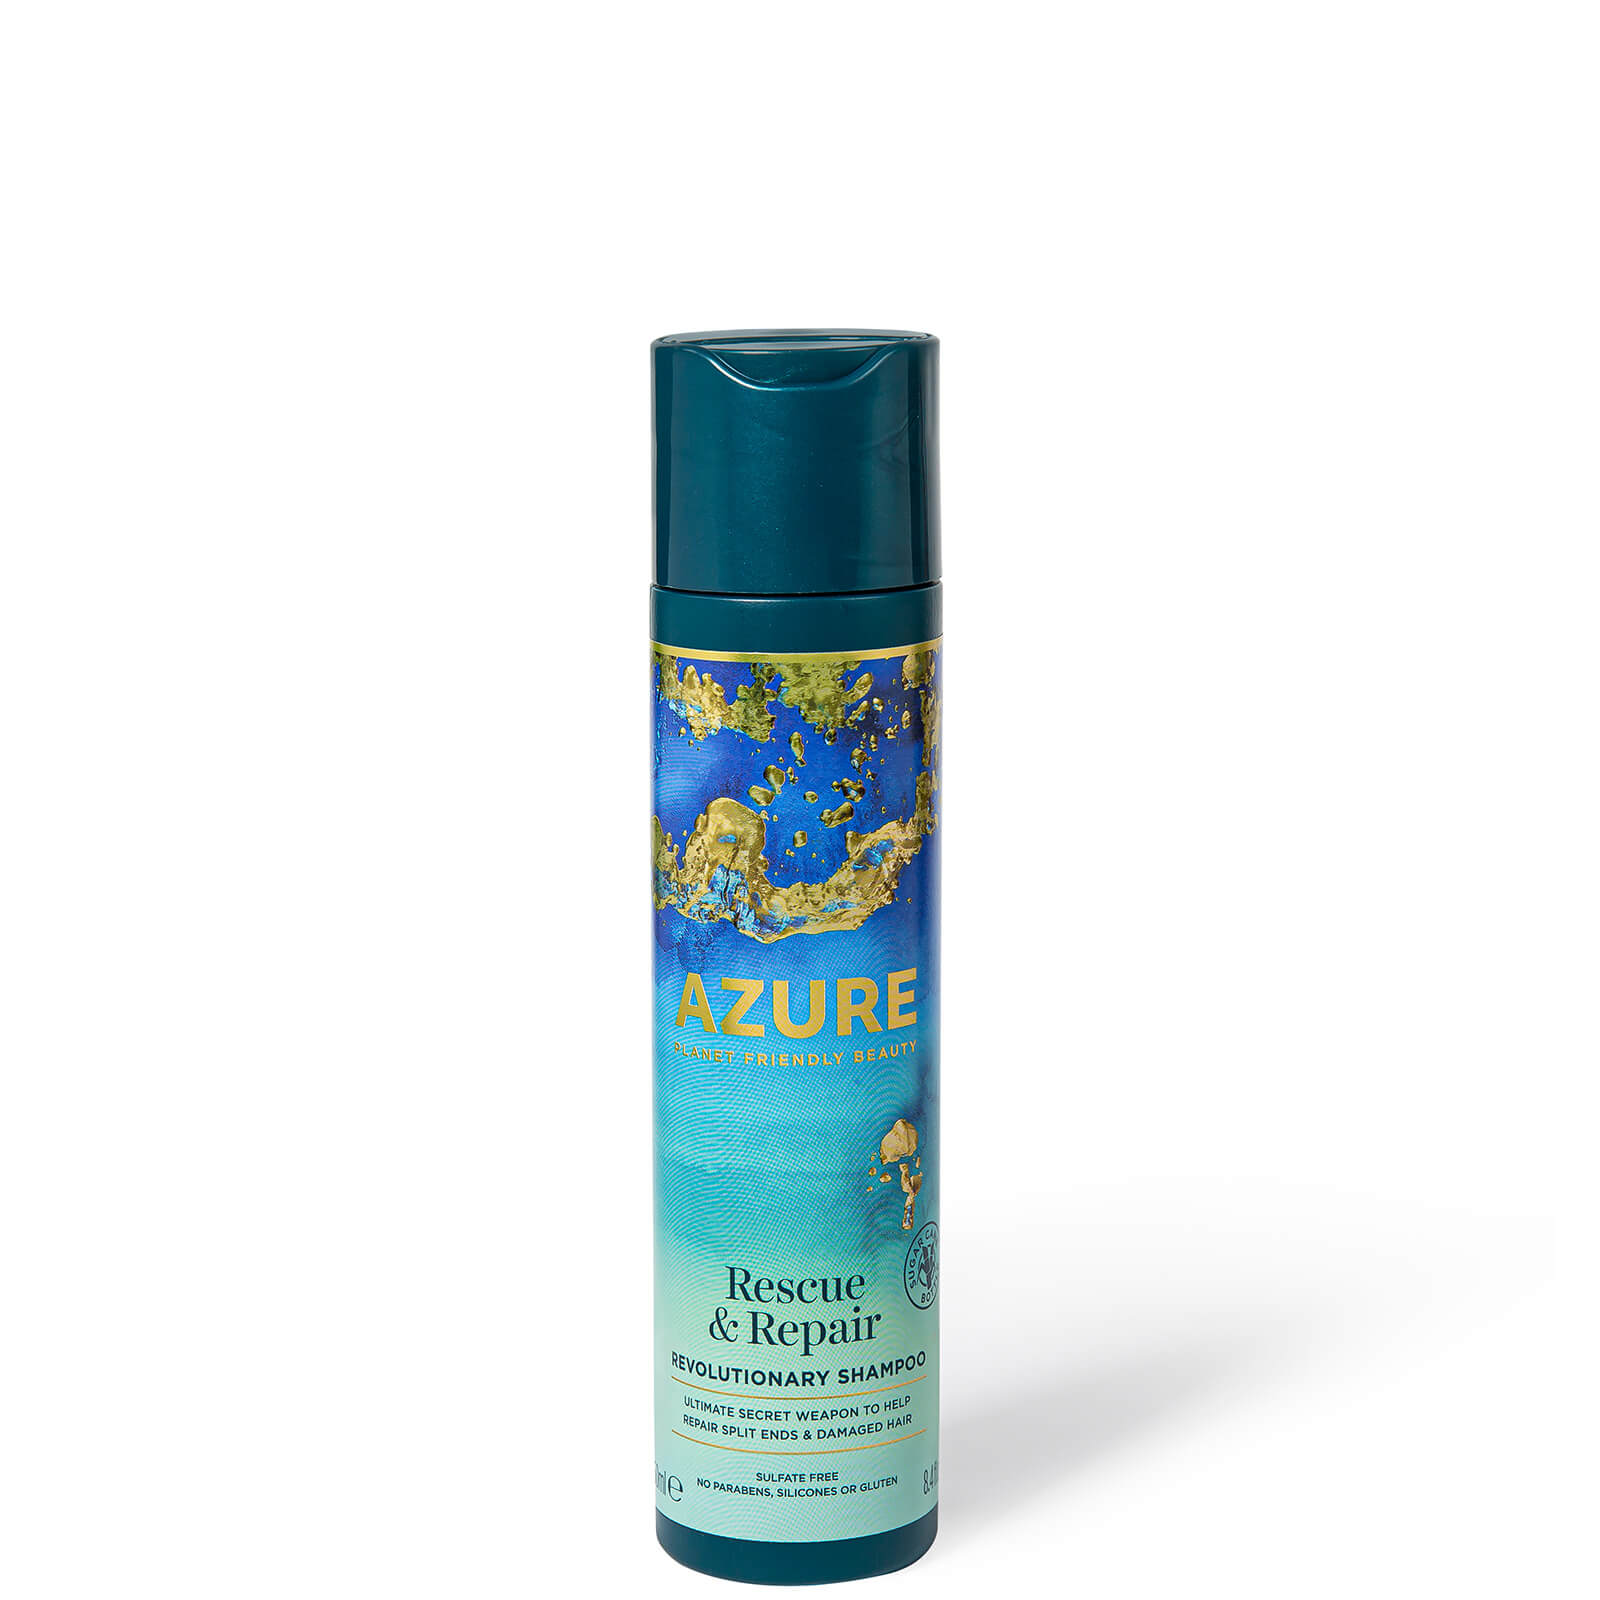 Azure Rescue & Repair Revolutionary Shampoo 250ml